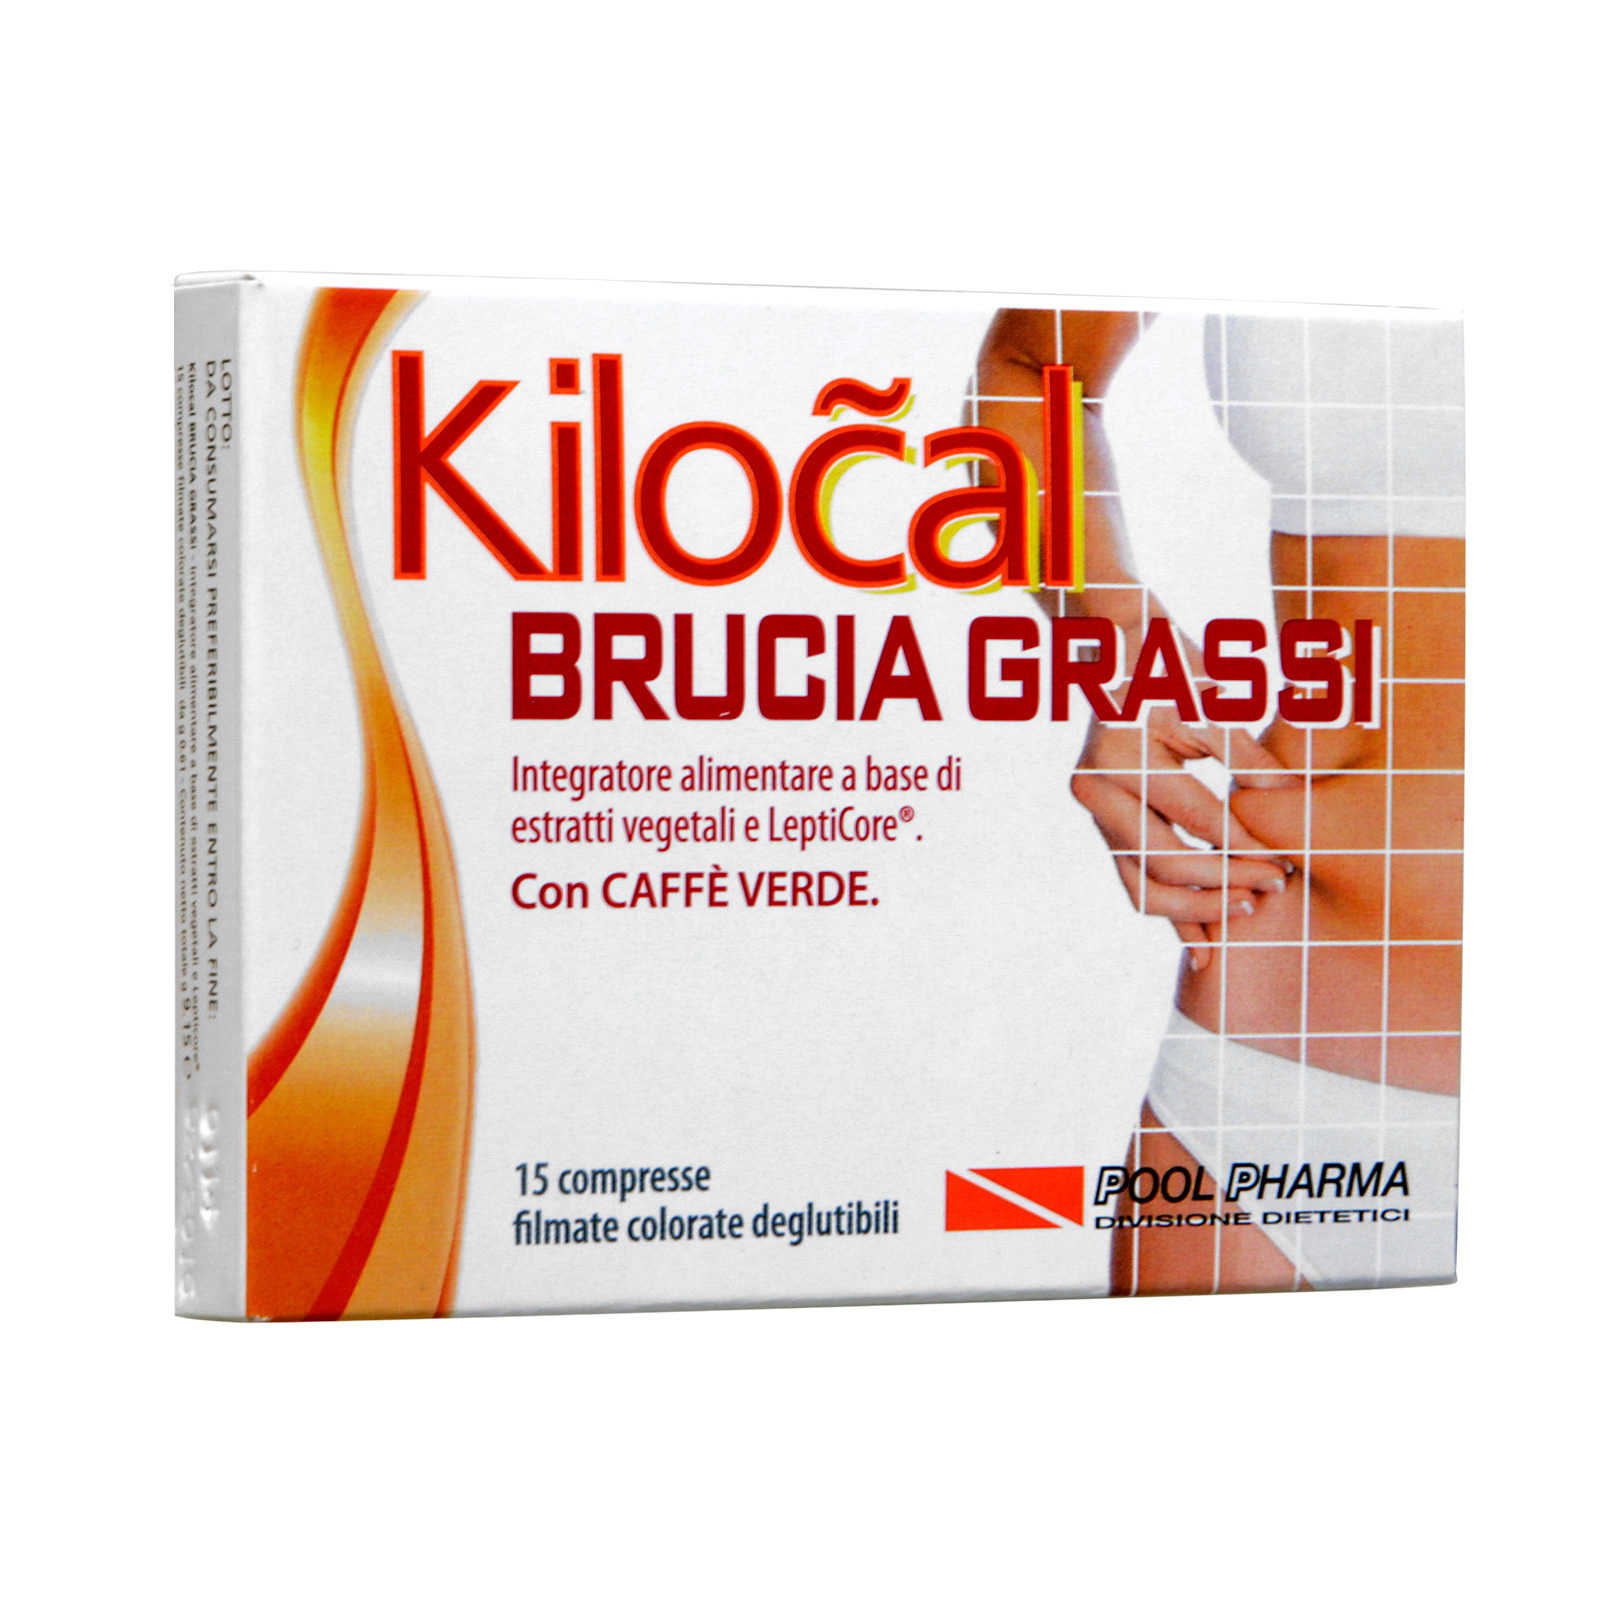 Kilocal - Integratore alimentare - Brucia Grassi